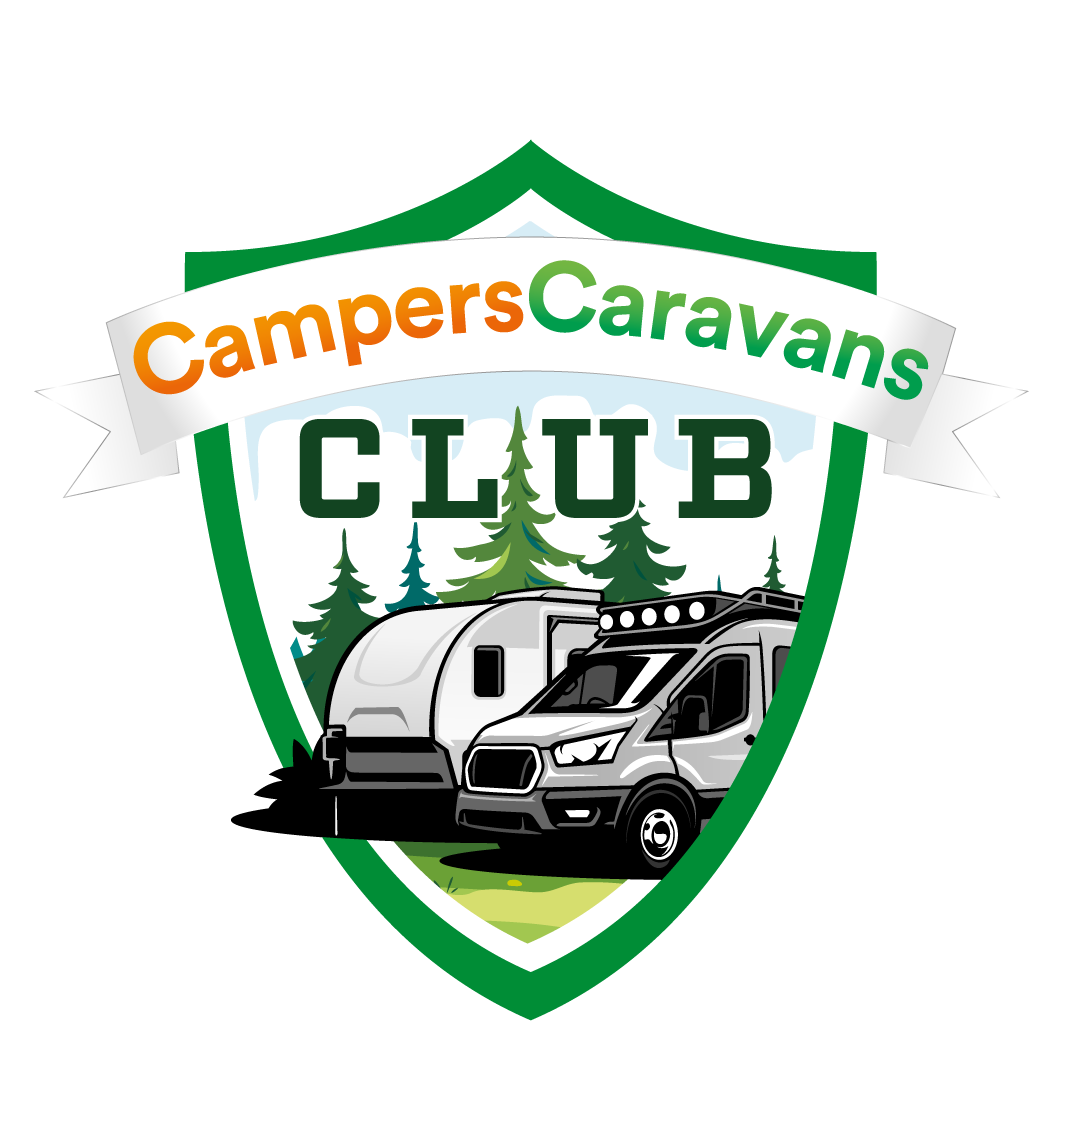 Camperscaravans logo